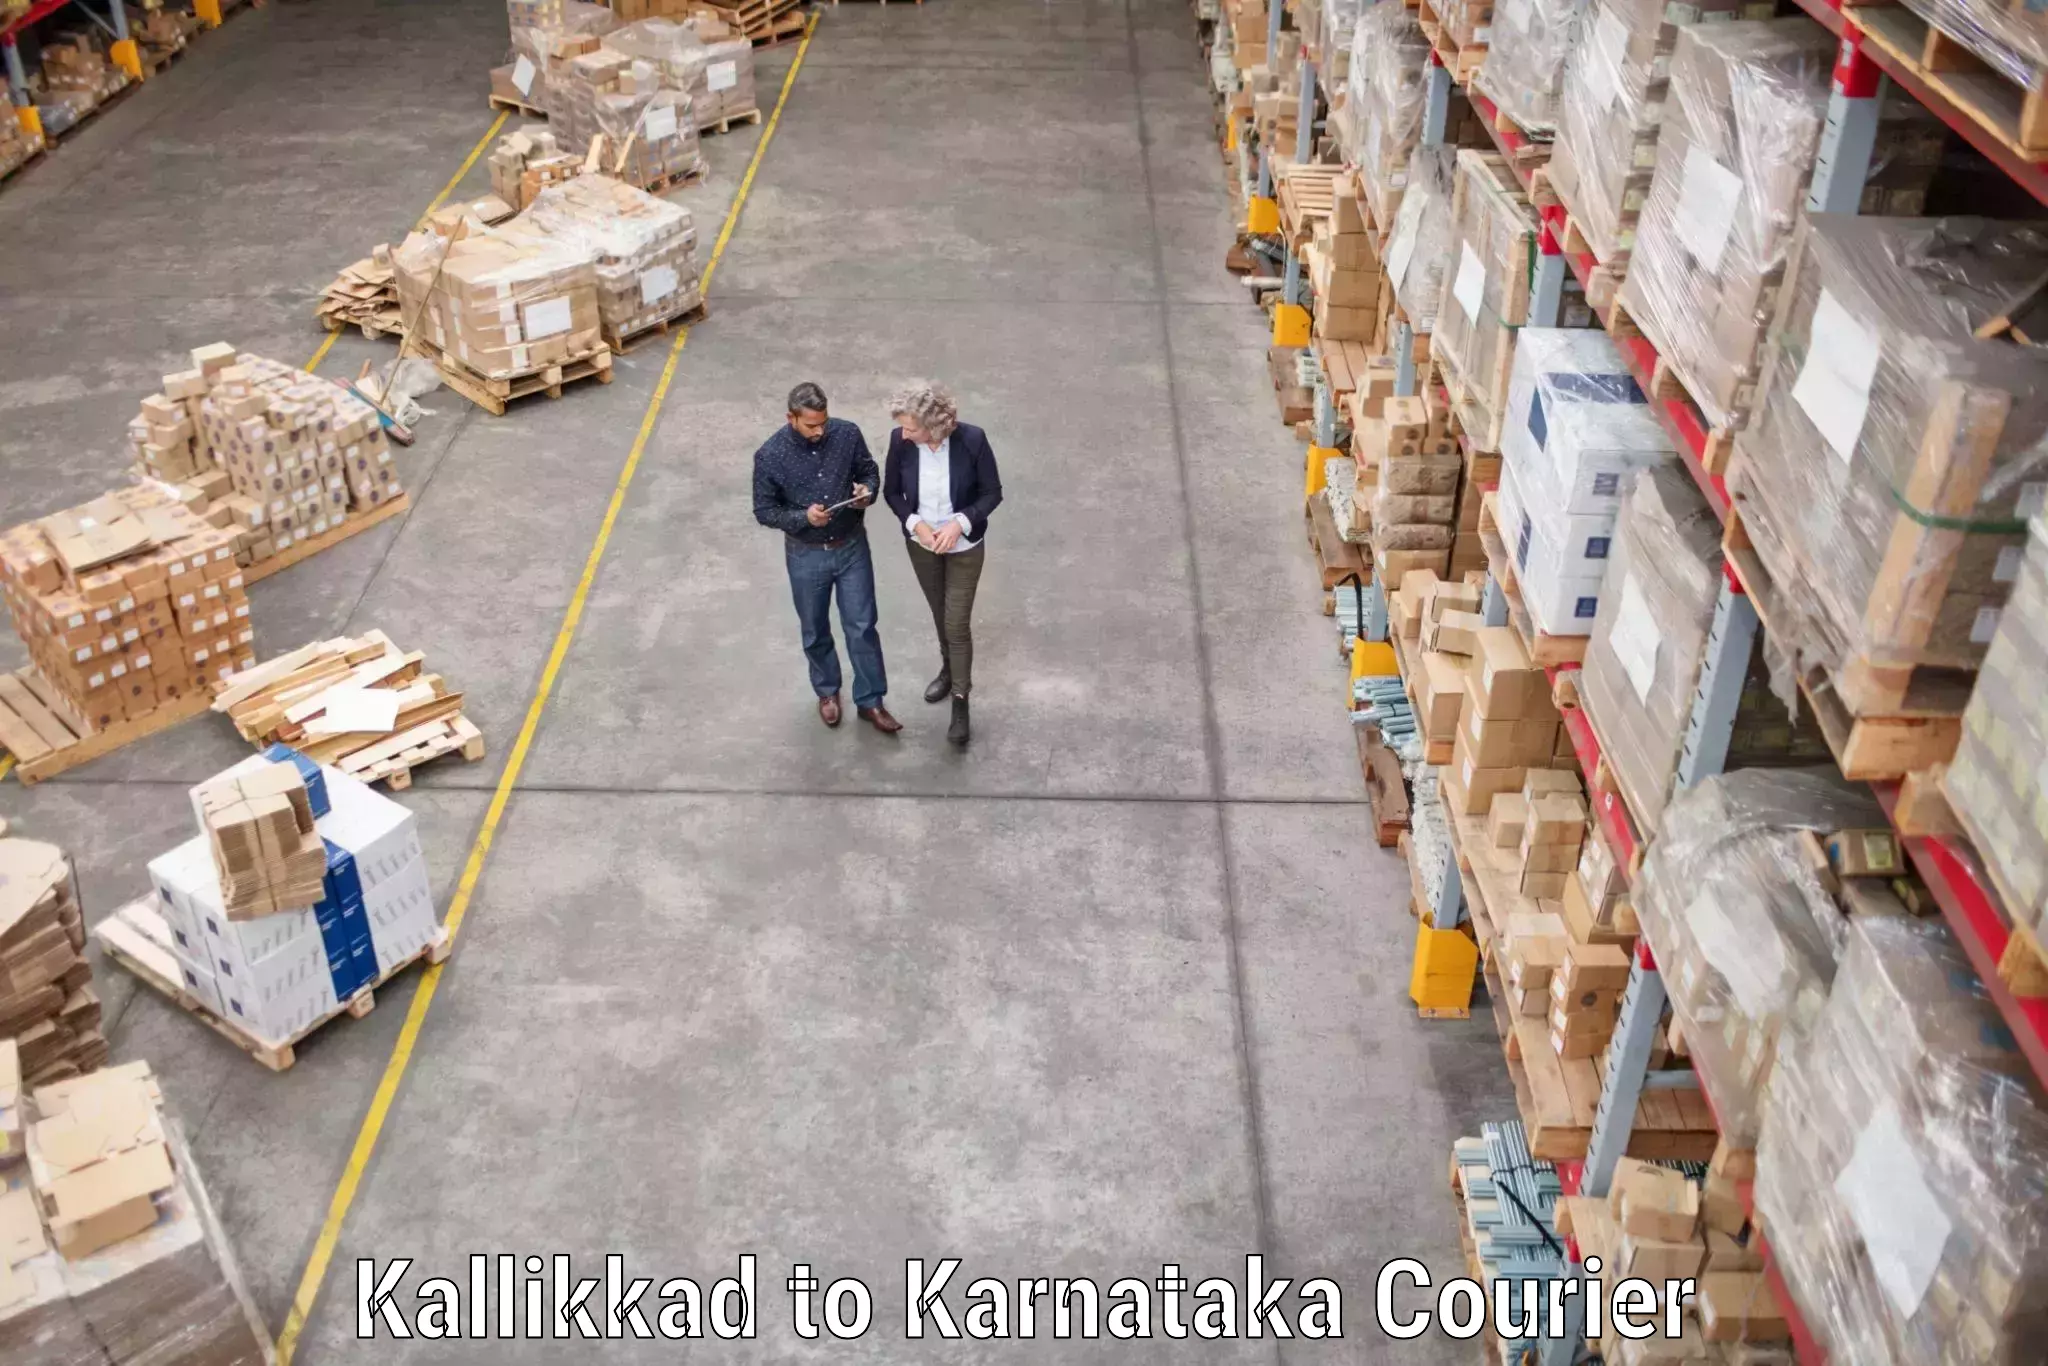 Reliable goods transport in Kallikkad to Yenepoya Mangalore